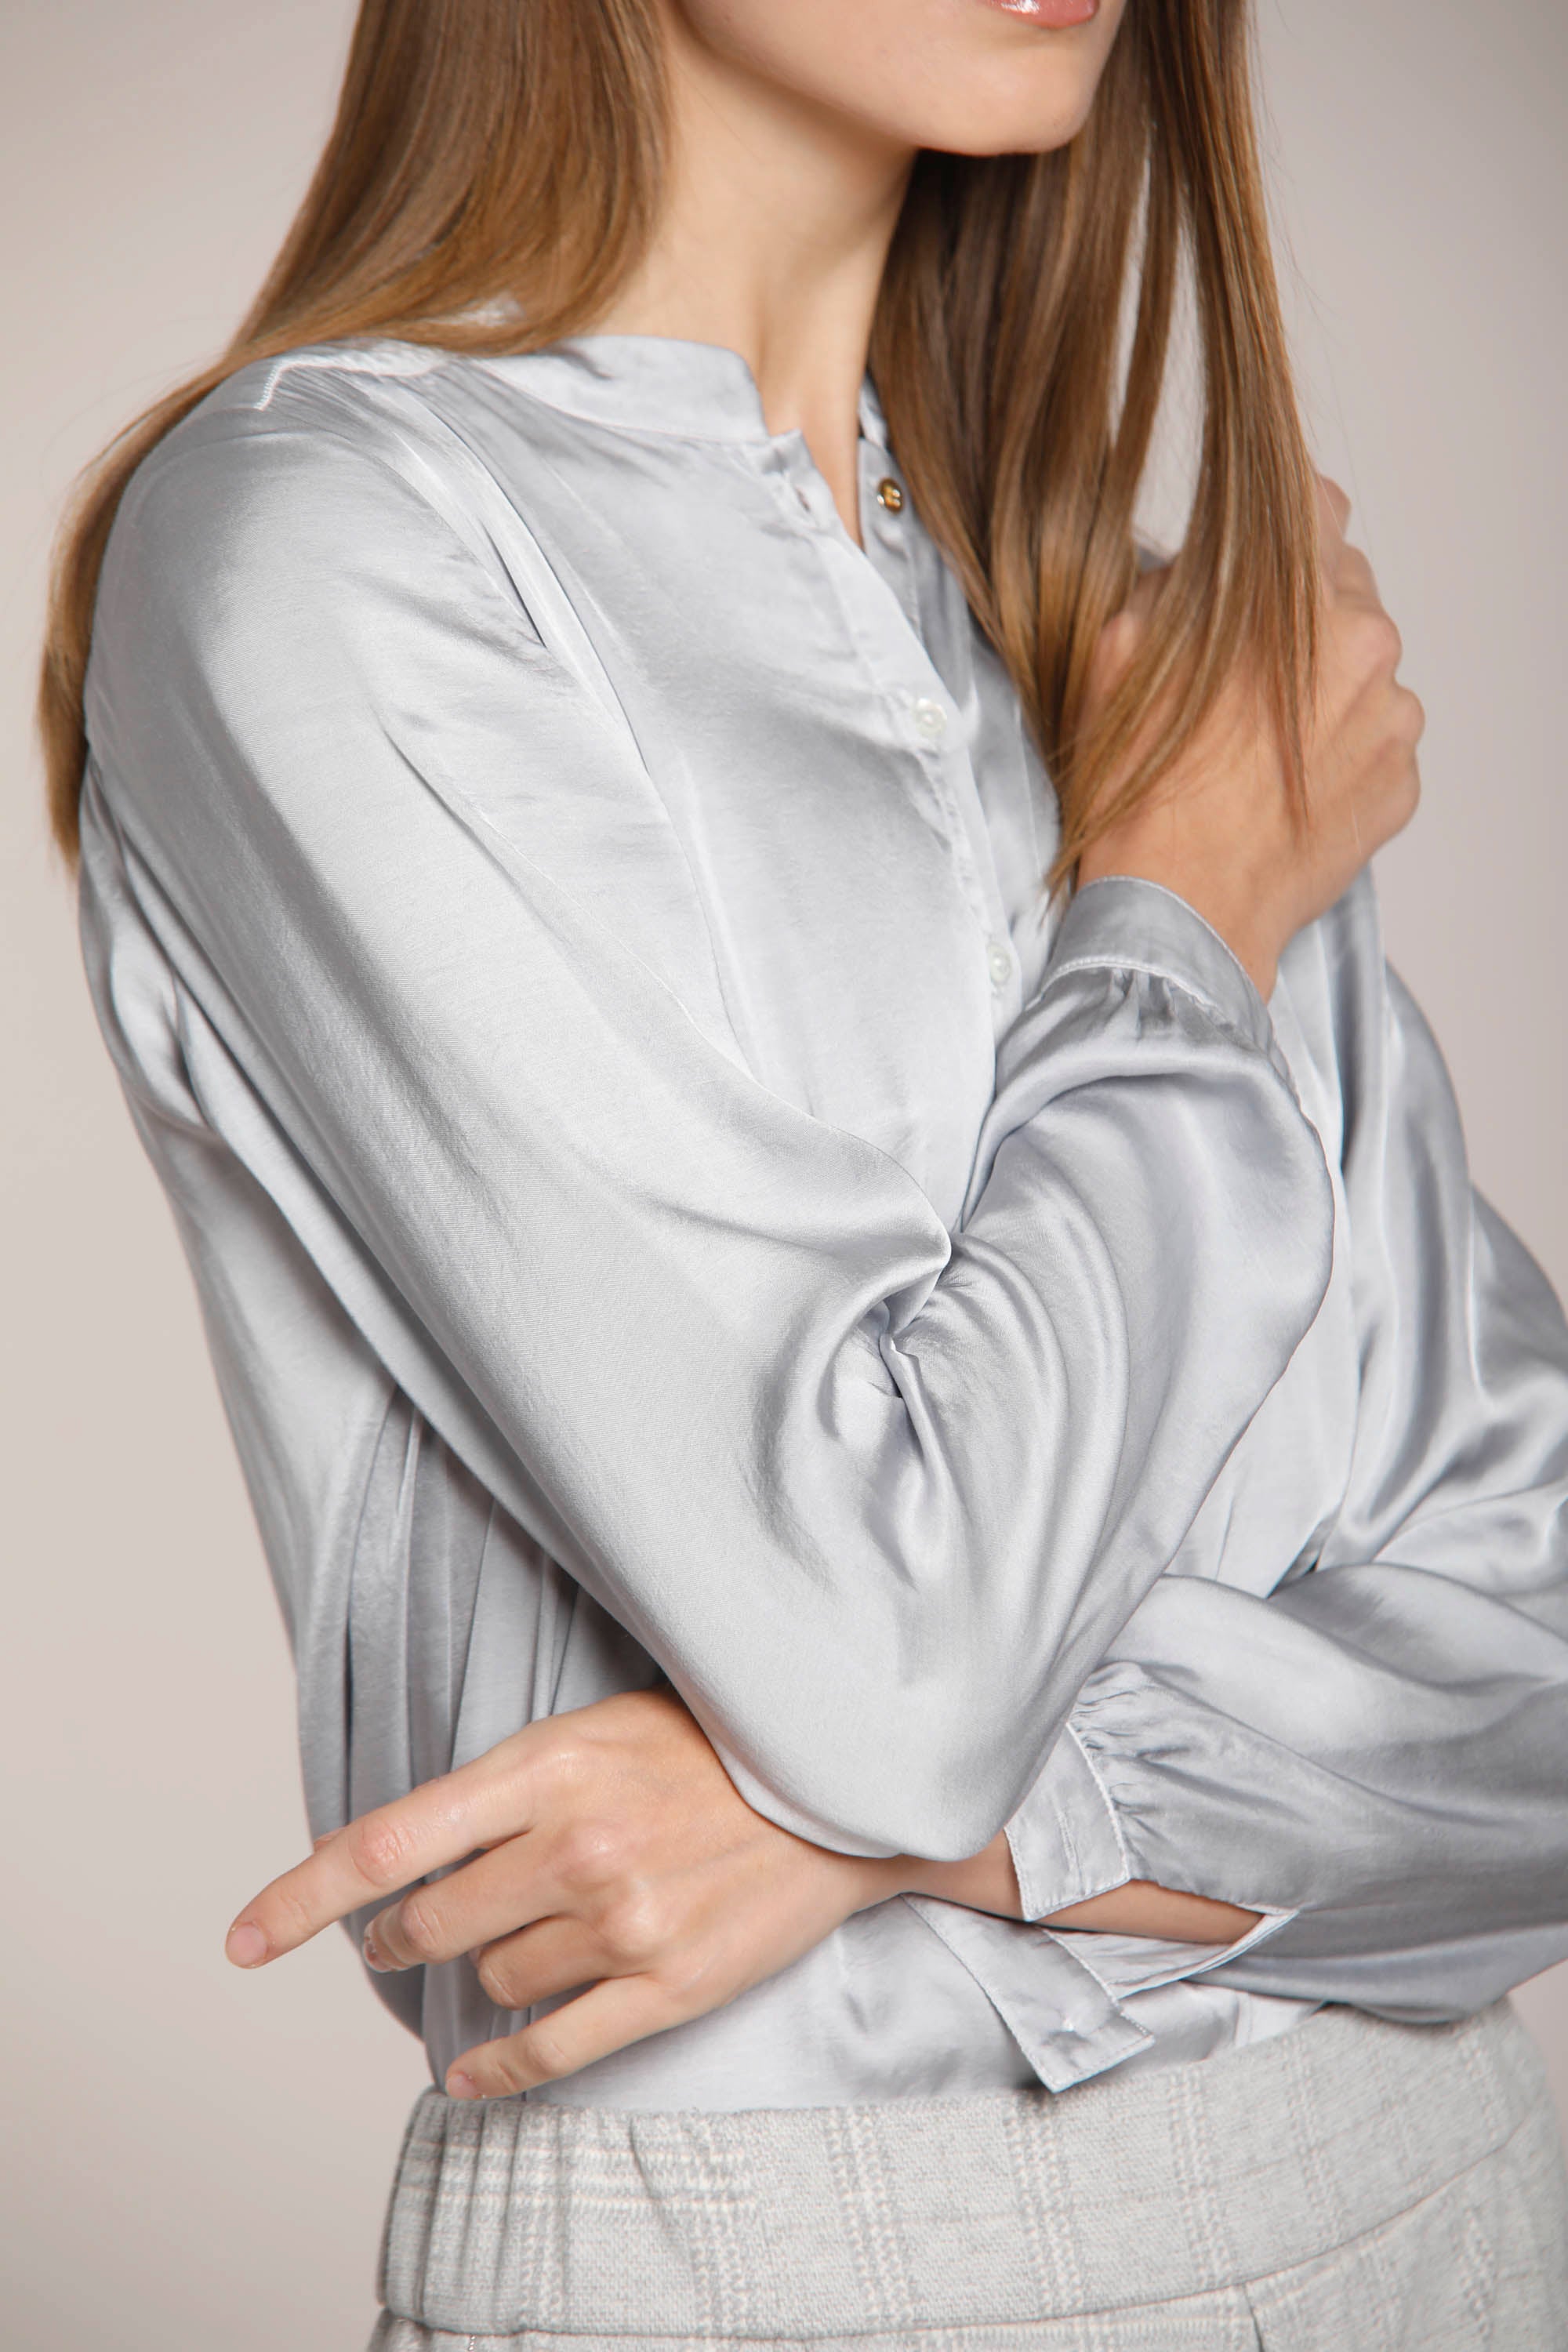 Bild 5 eines Damen-Viskosehemds, hellgrau, Modell Margherita Shirt von Mason's